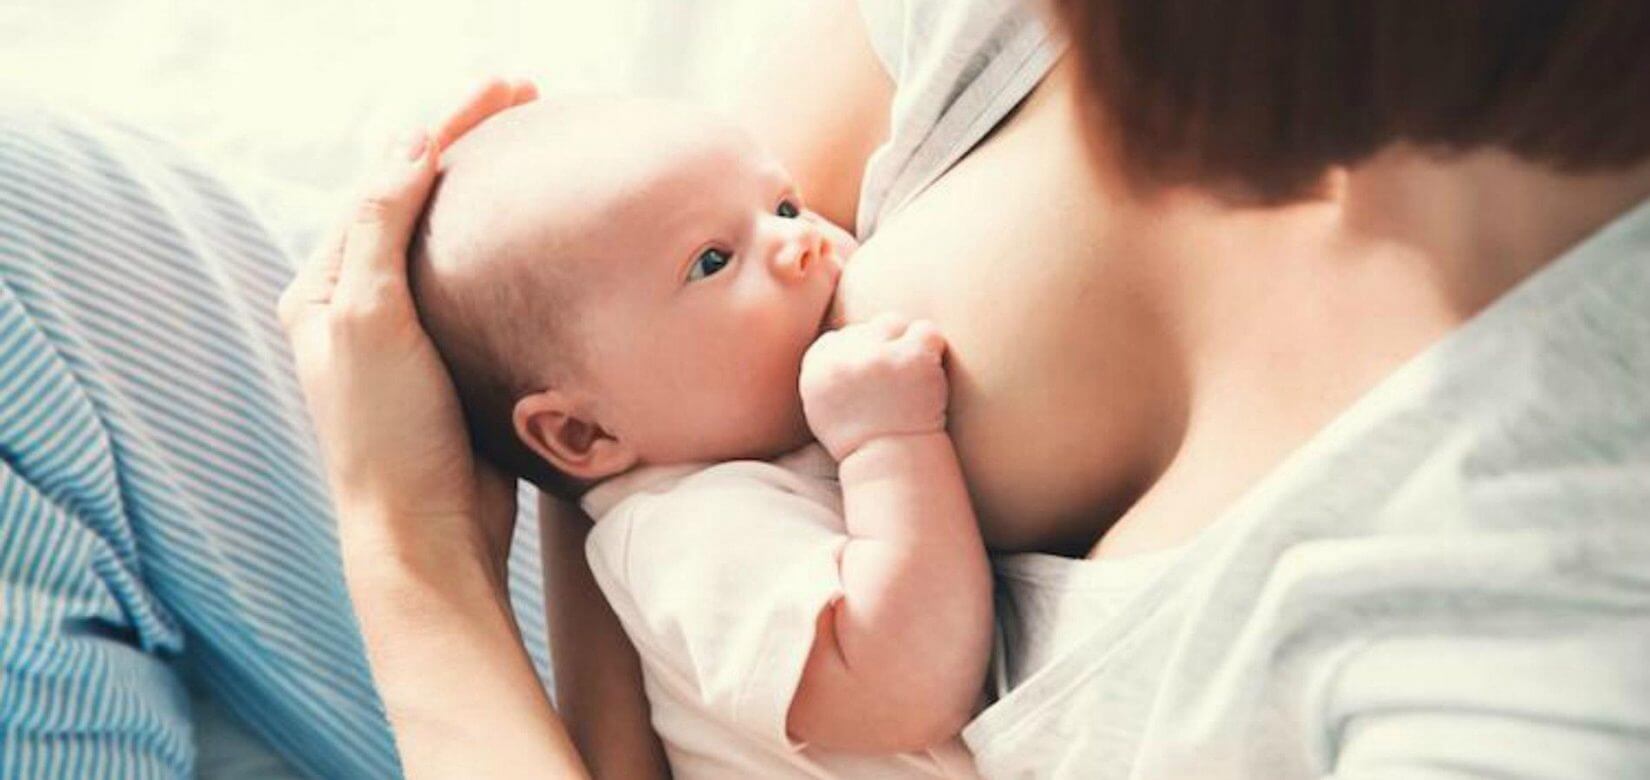 Έρευνα: Απολύτως ασφαλής ο εμβολιασμός της μητέρας κατά τη διάρκεια του θηλασμού